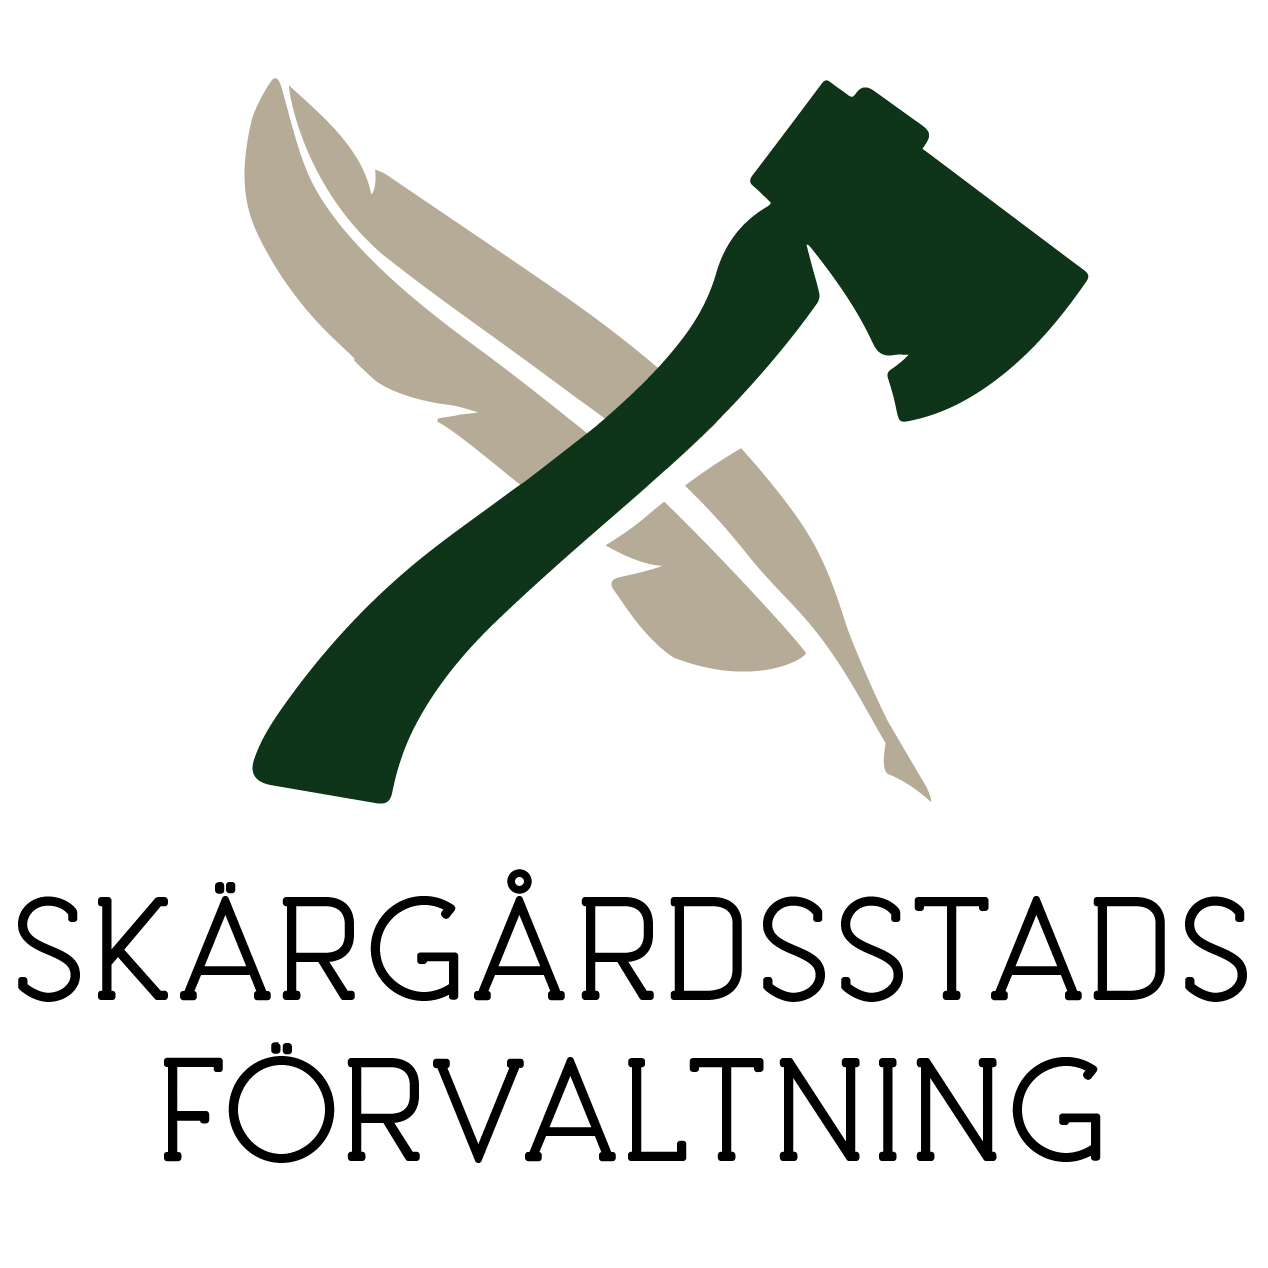 skargardsstadsforvaltning.se